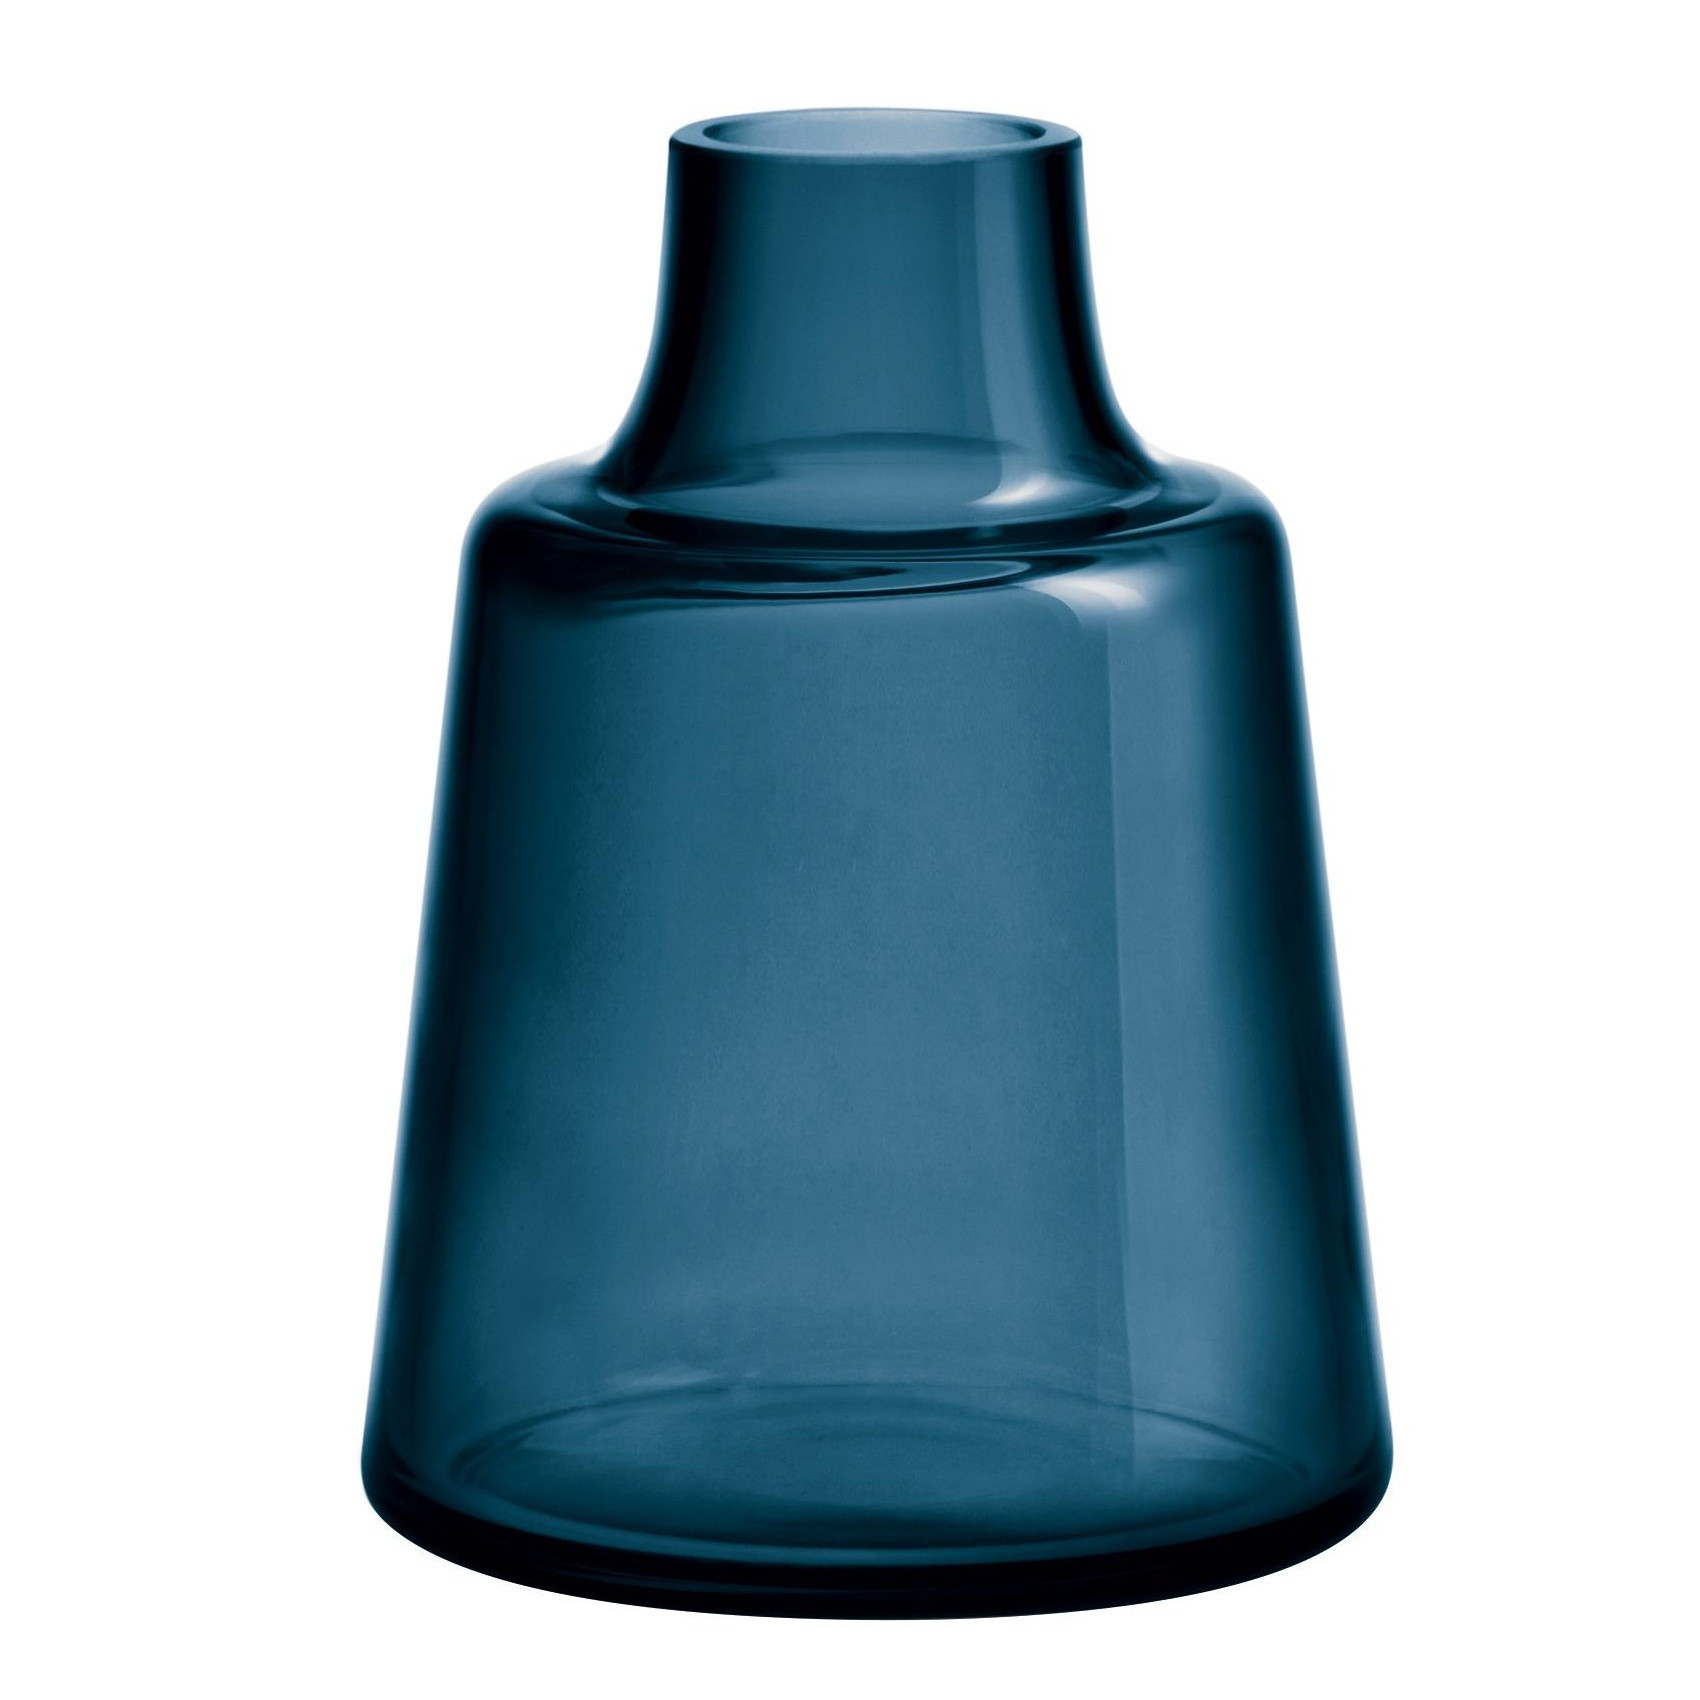 iittala aalto vase of holmegaard flora vase h 24cm ambientedirect for 232361 1700x1700 id1922502 c23d7e4f57bf890f68b32fb46a88790c